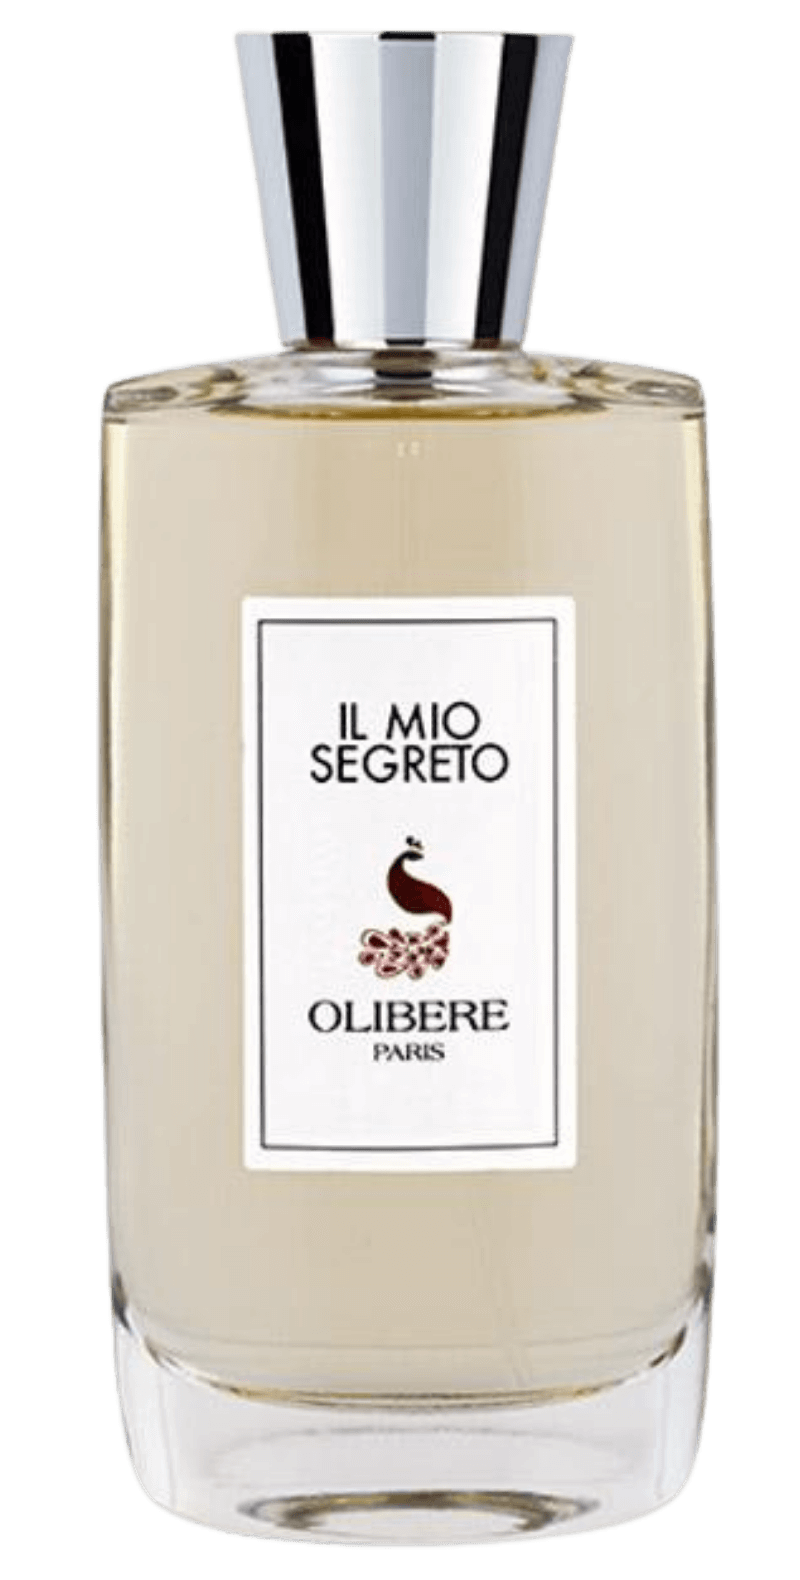 &#39;s Olibere Il Mio Segreto - Bellini&#39;s Skin and Parfumerie 